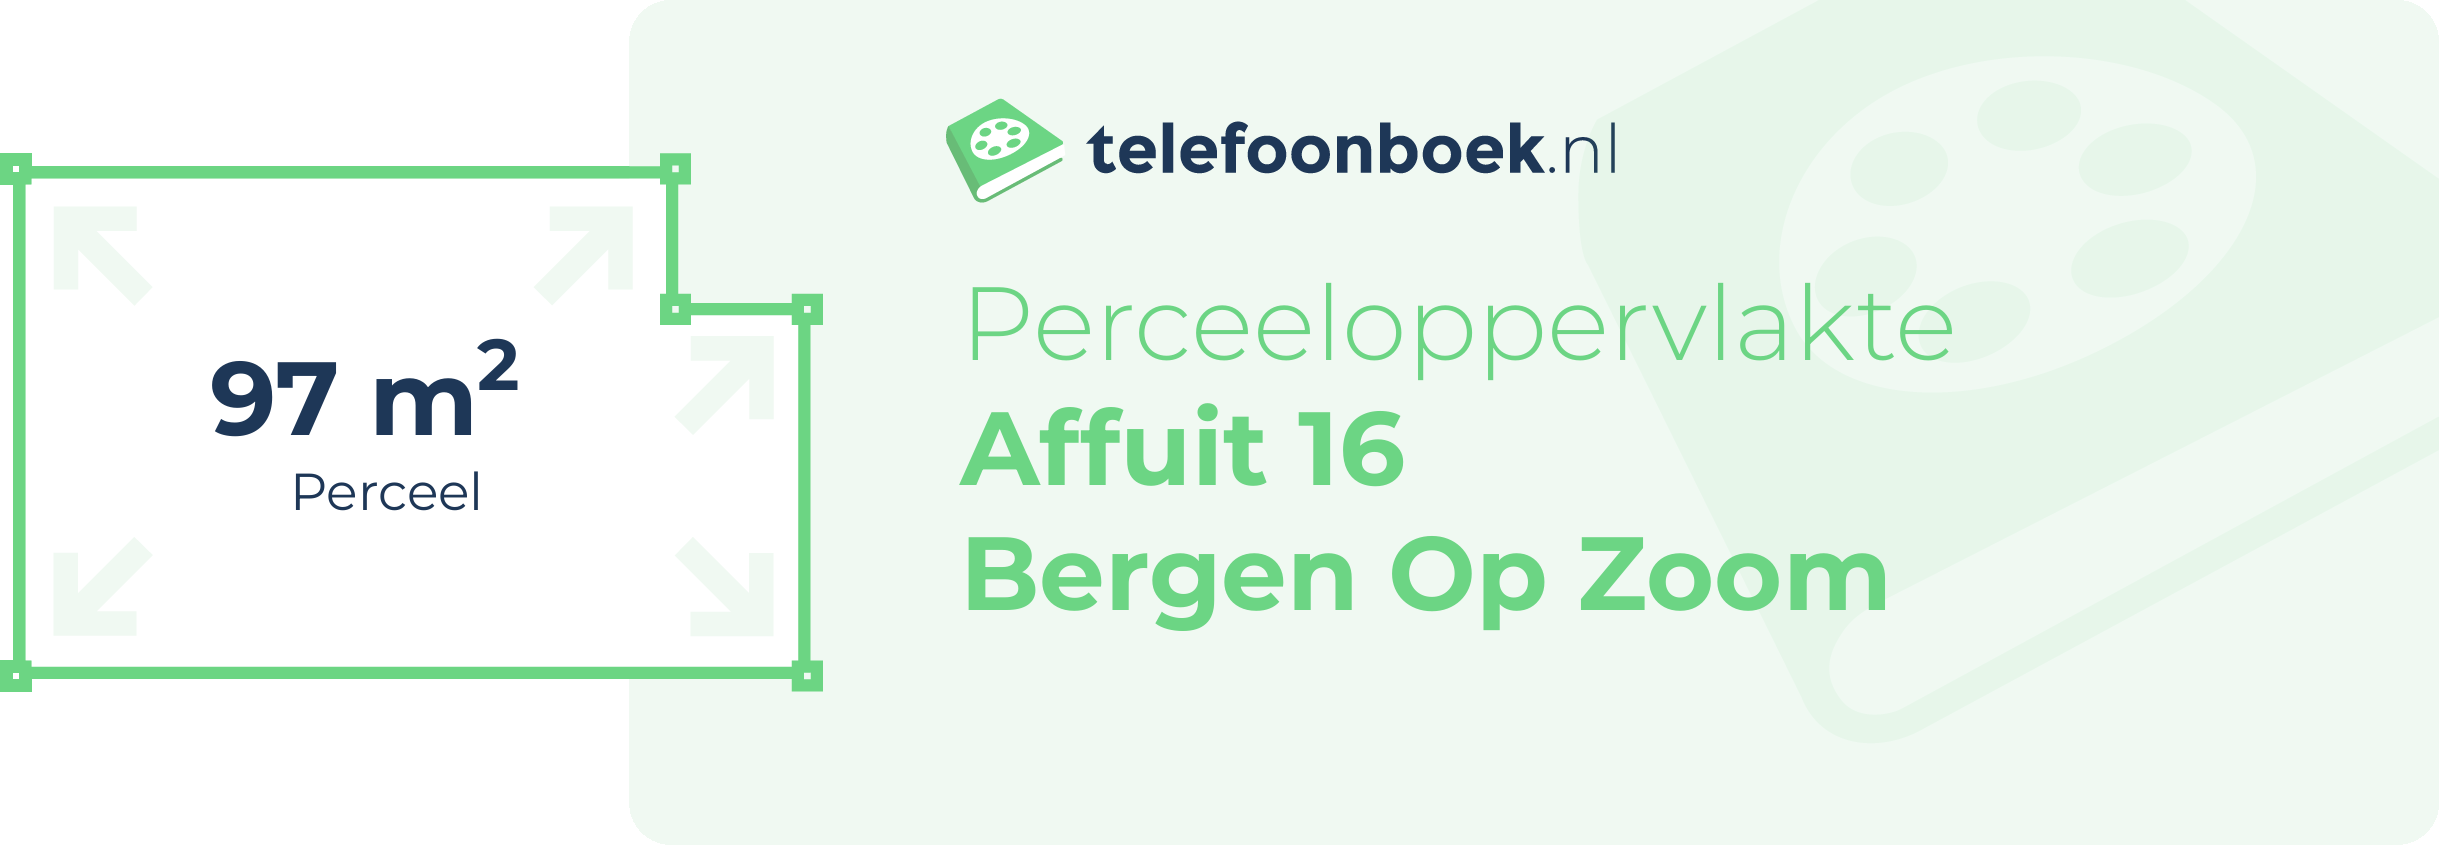 Perceeloppervlakte Affuit 16 Bergen Op Zoom